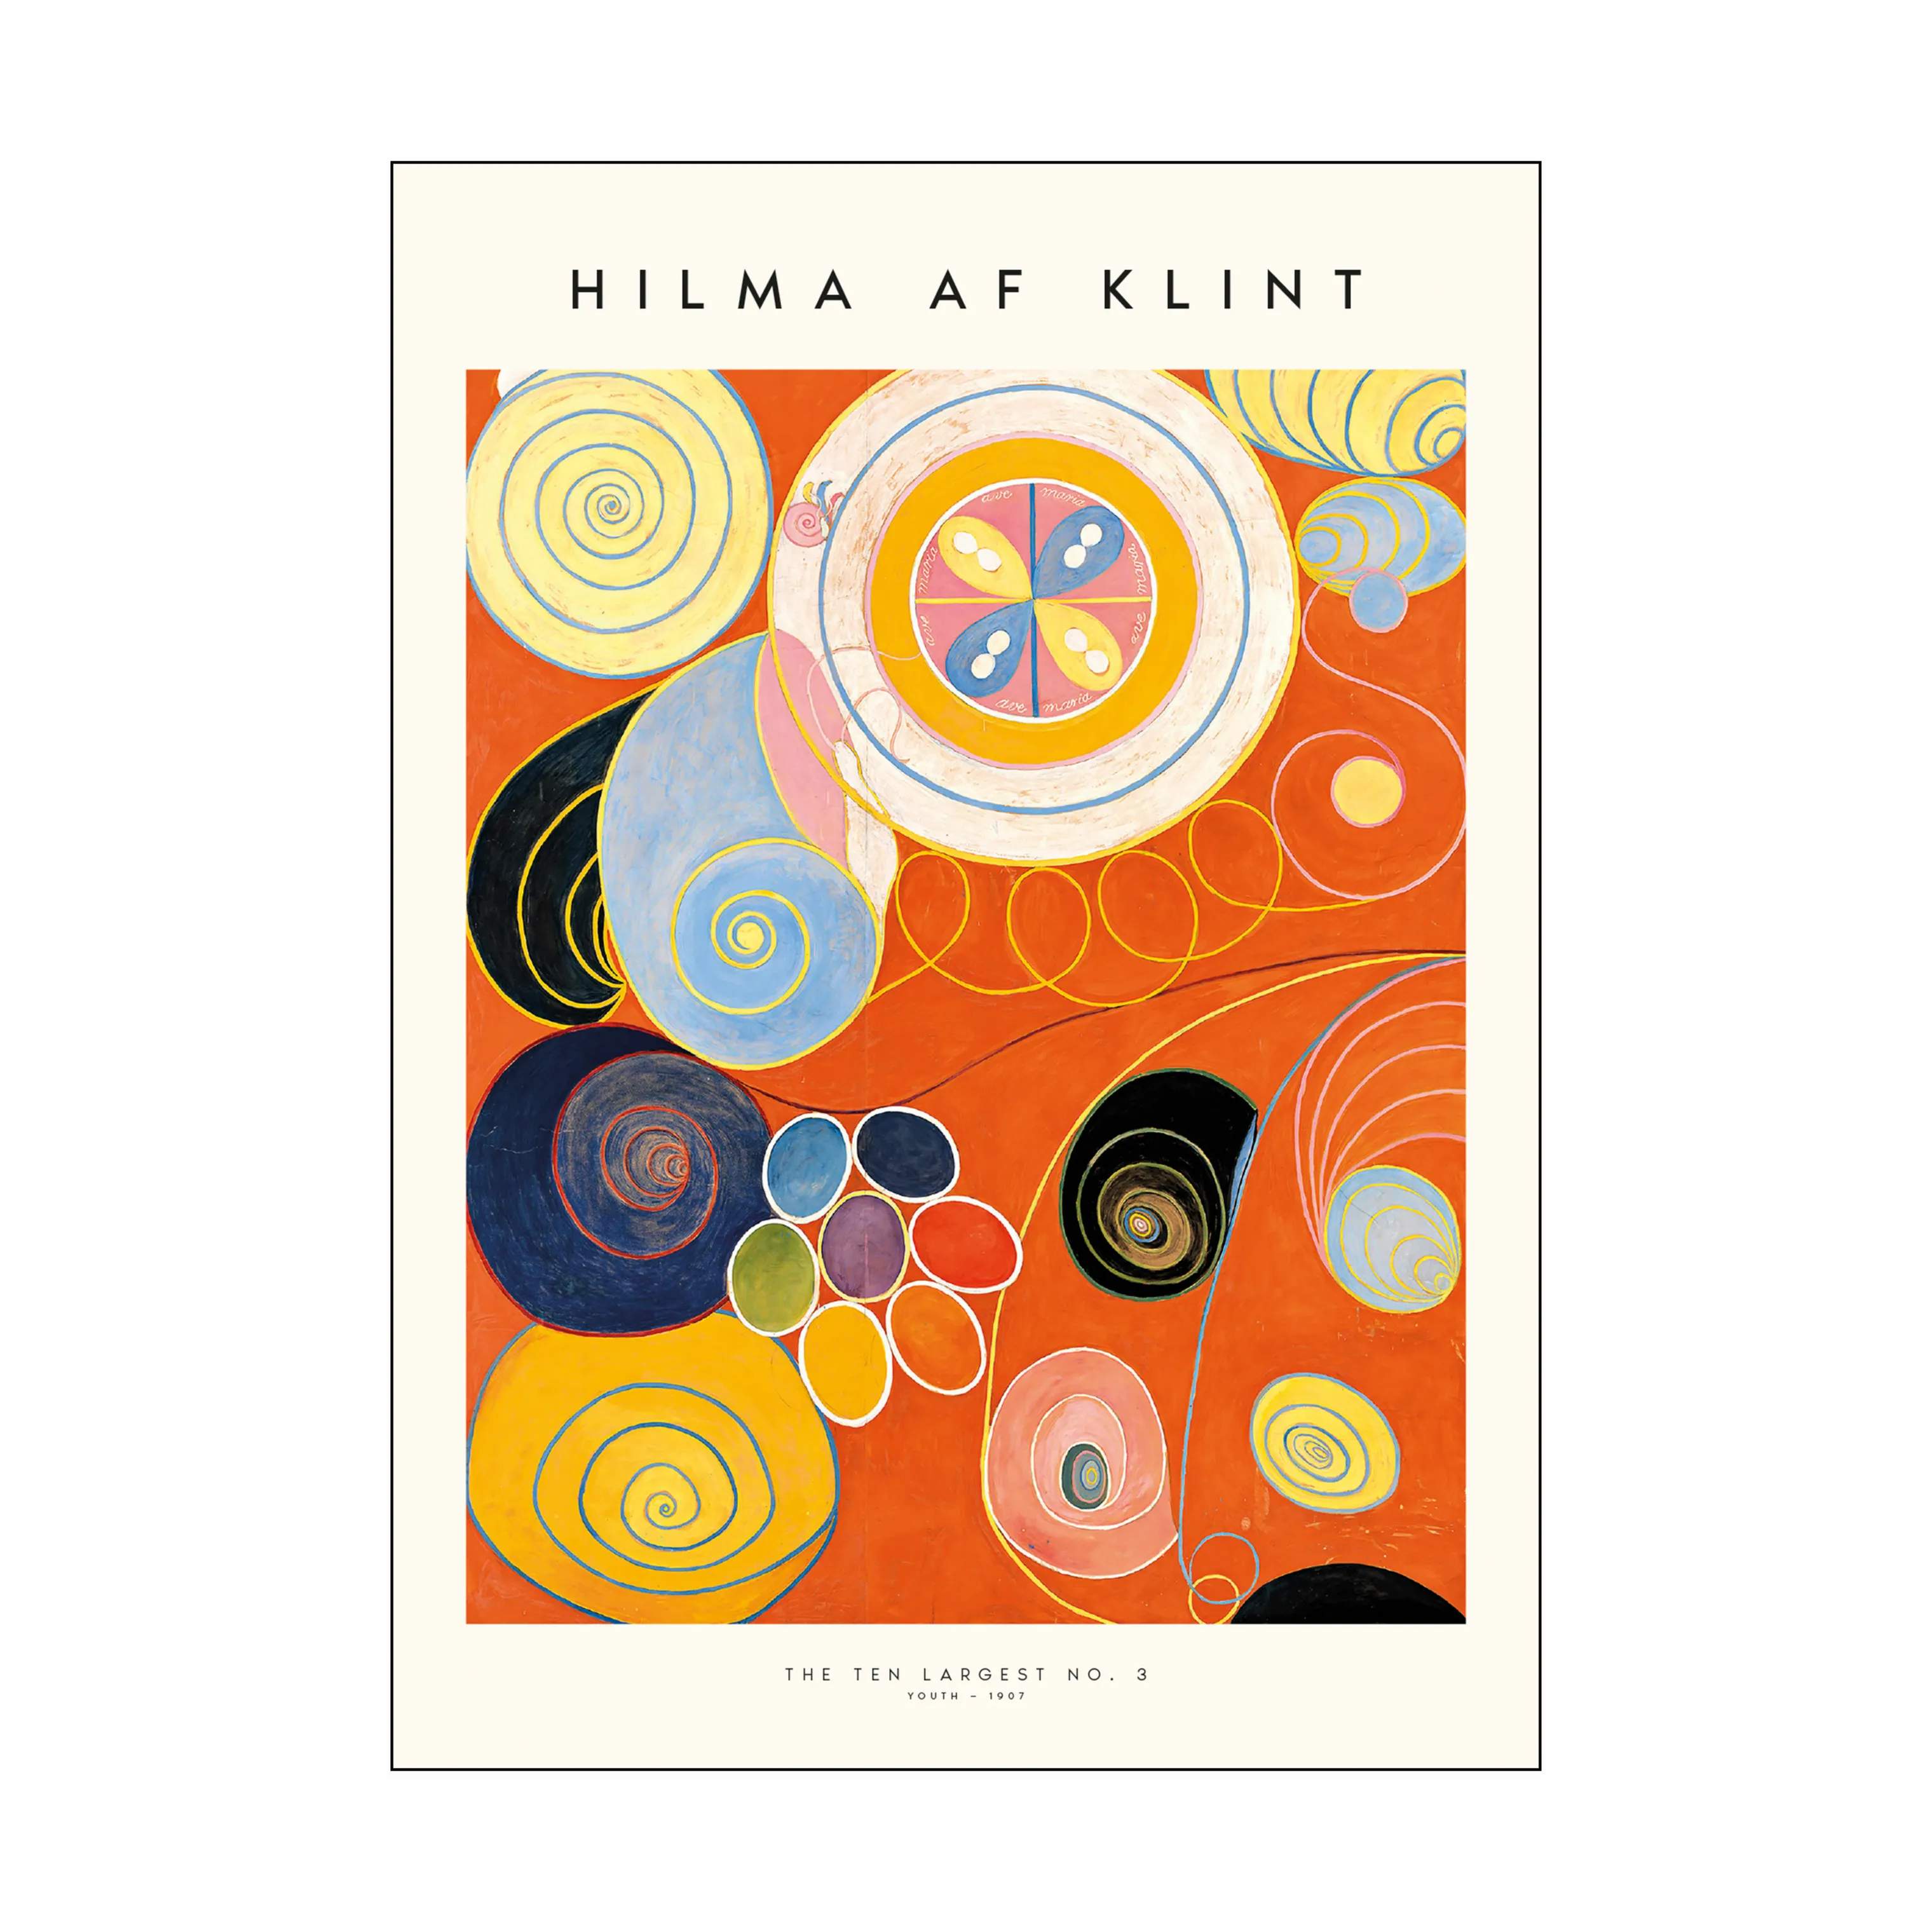 Hilma af Klint Plakat - The ten largest no. 03, hilma multifarvet, large